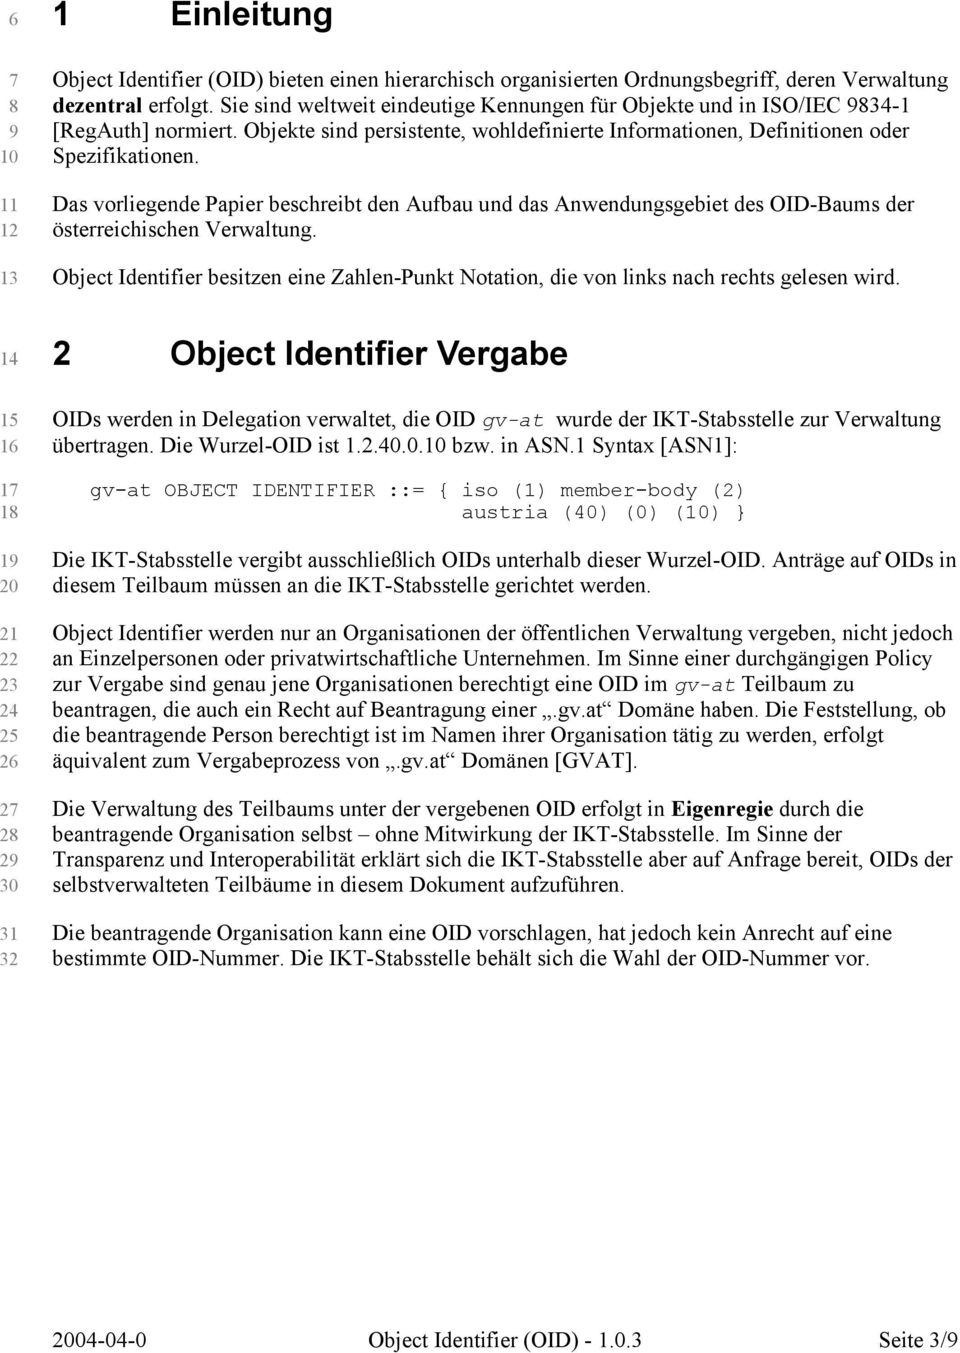 Das vorliegende Papier beschreibt den Aufbau und das Anwendungsgebiet des OID-Baums der österreichischen Verwaltung.